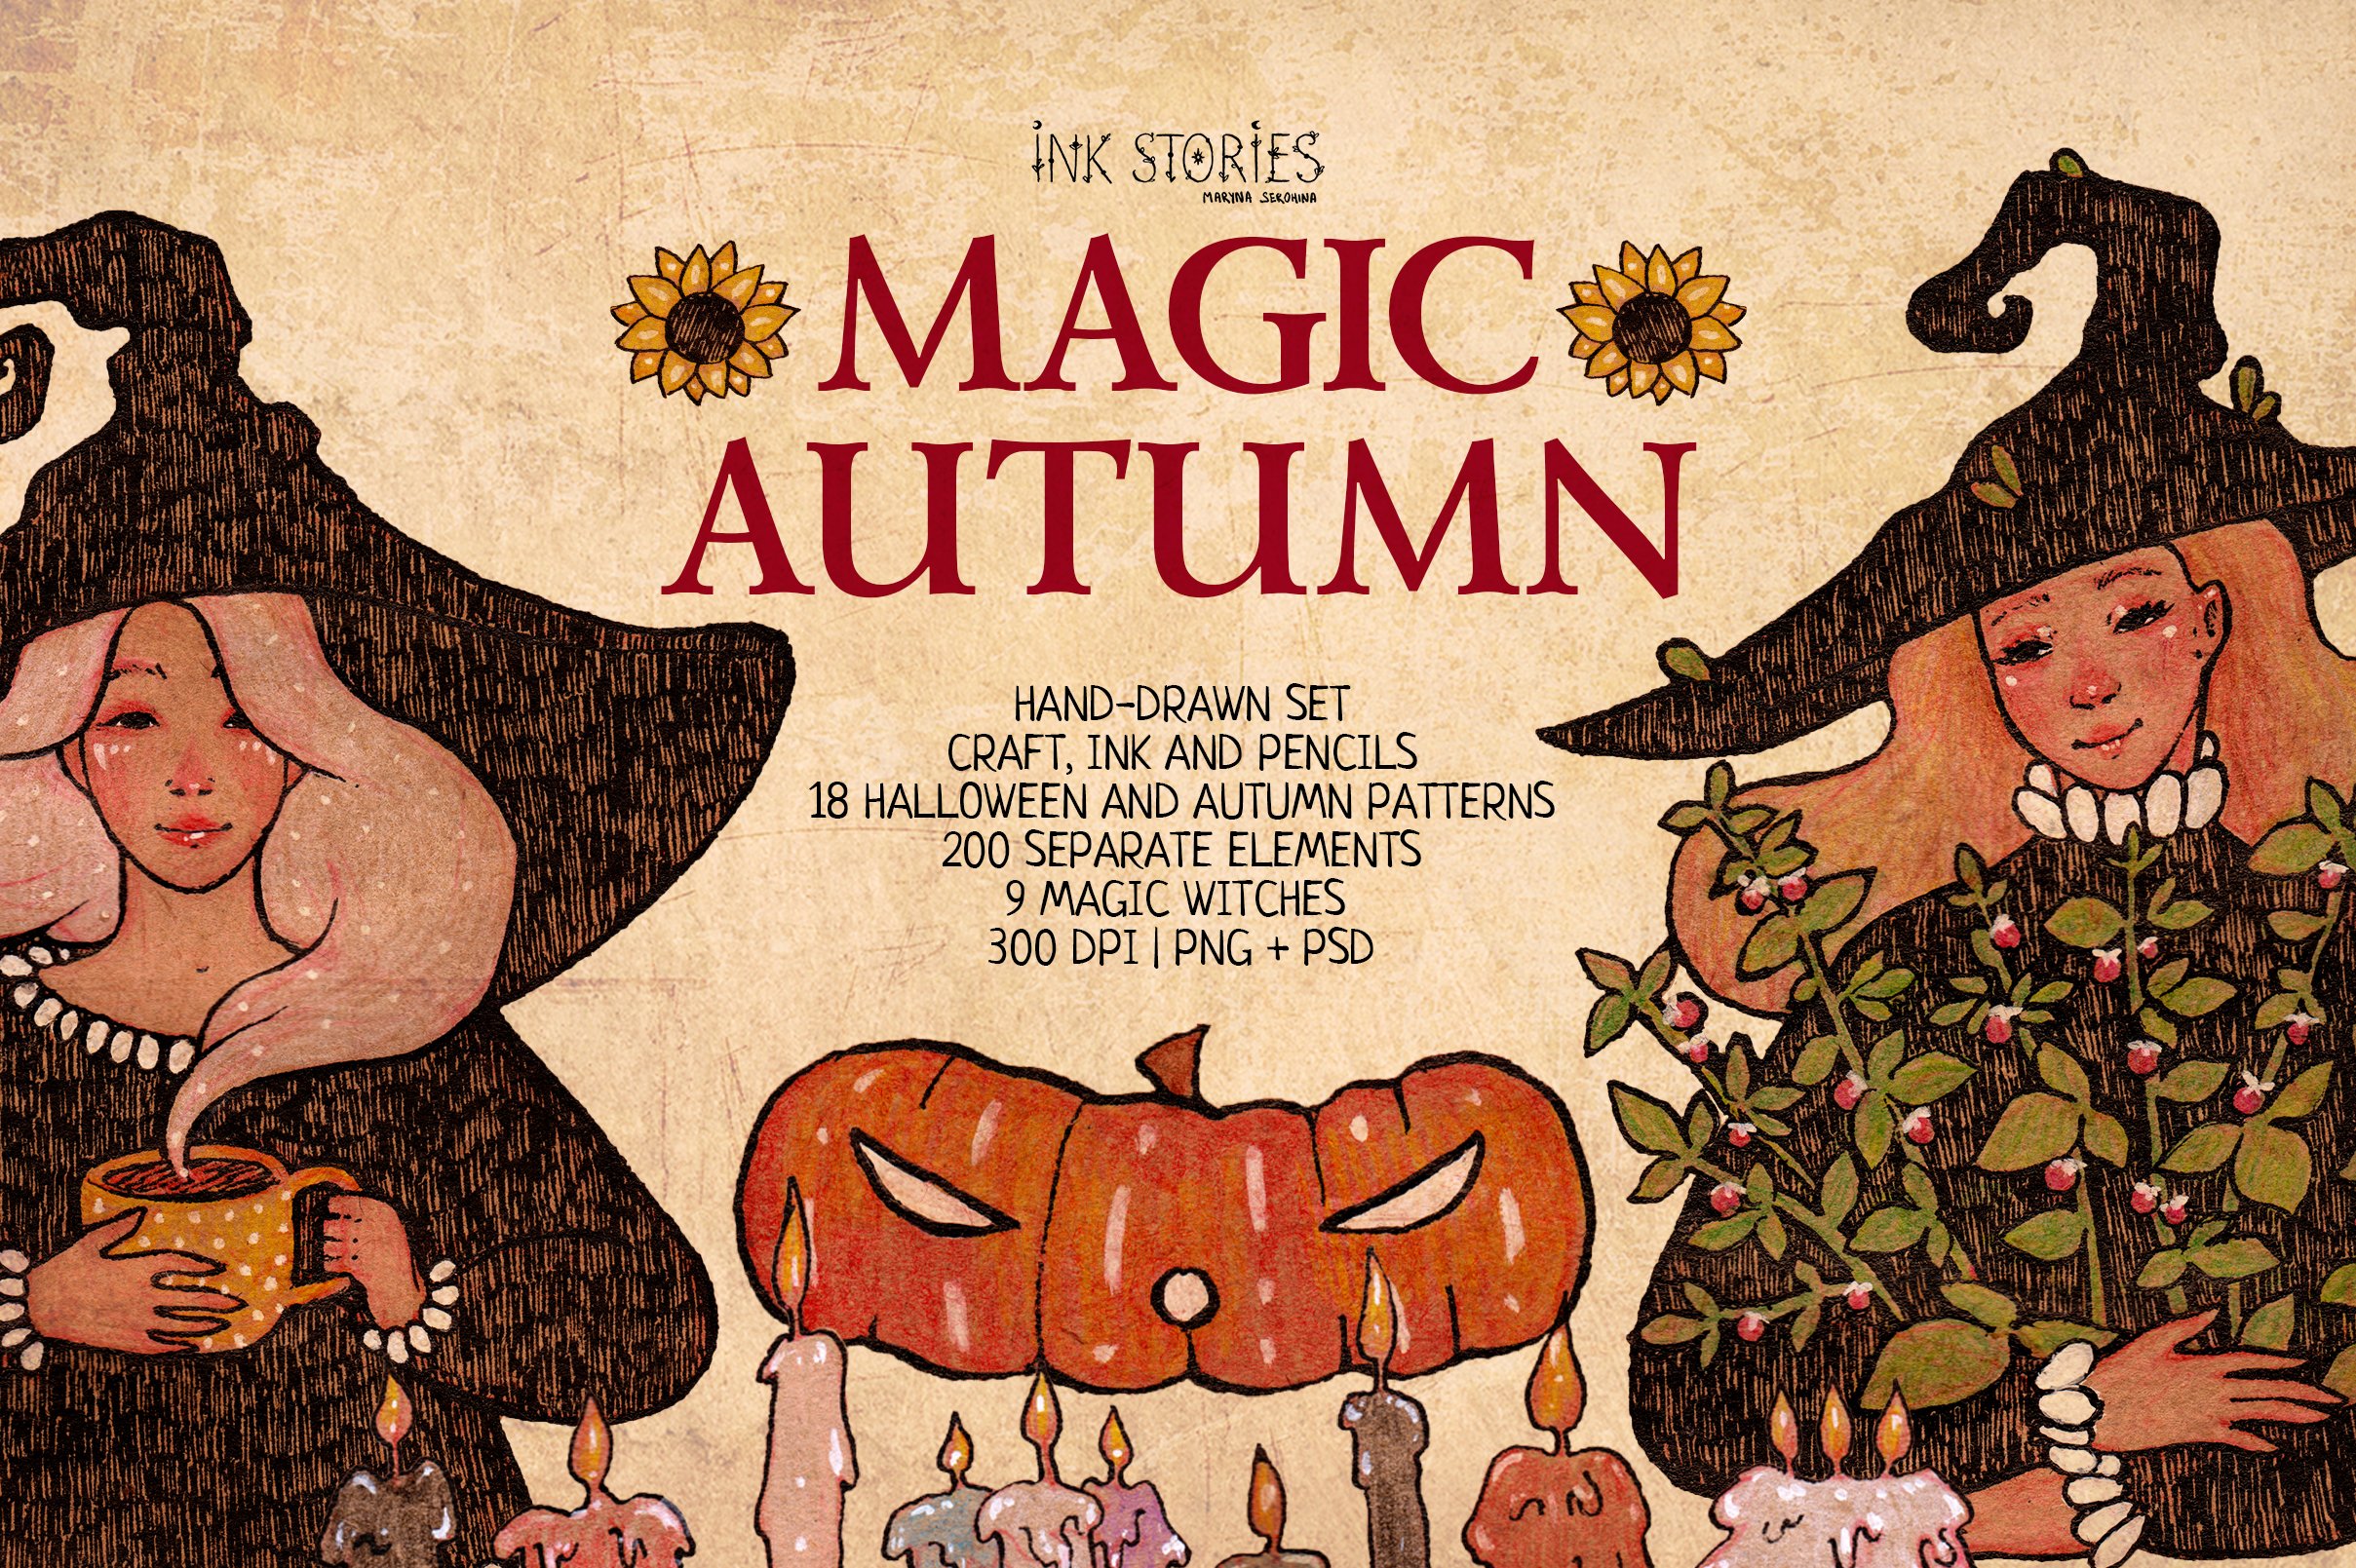 Magic Autumn cover image.